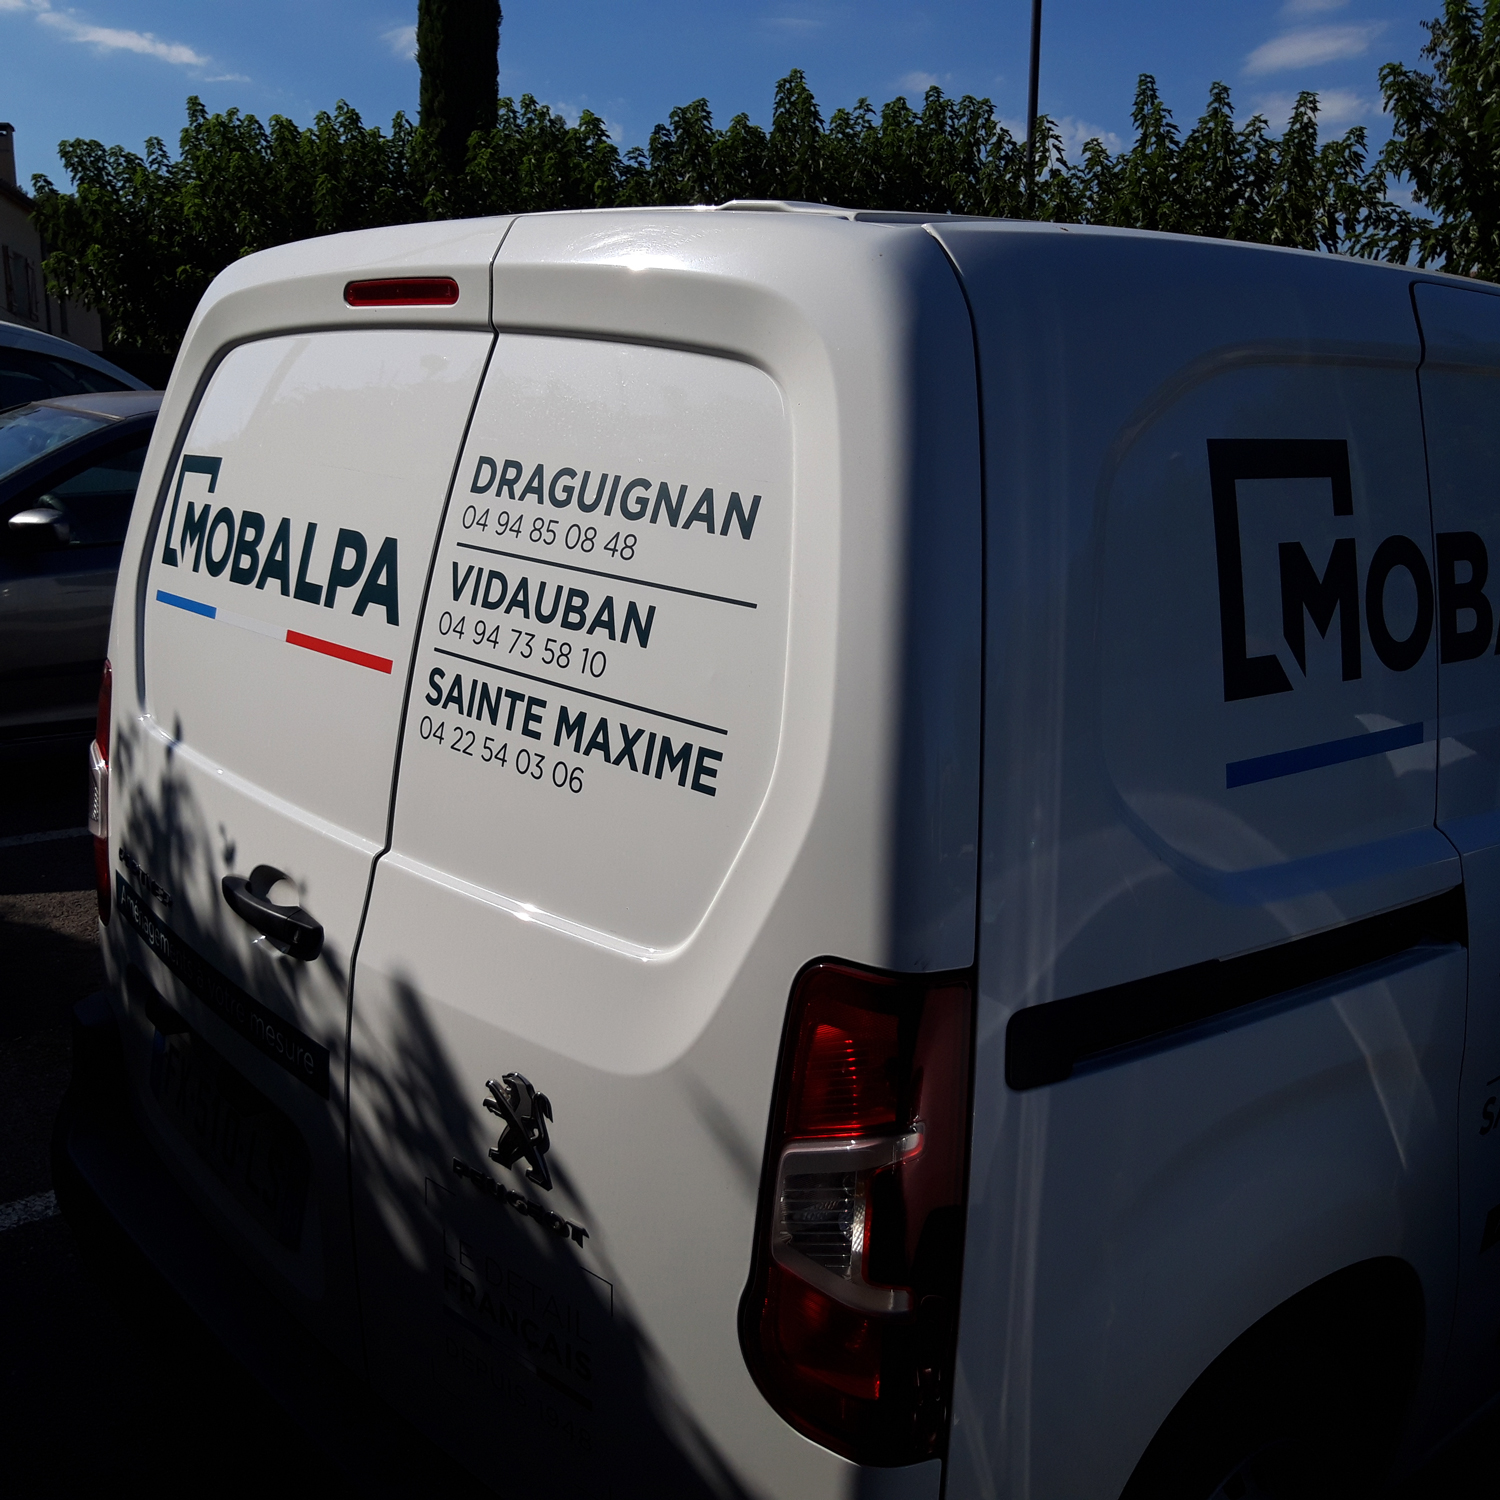 Marquage véhicule pour Mobalpa Draguignan